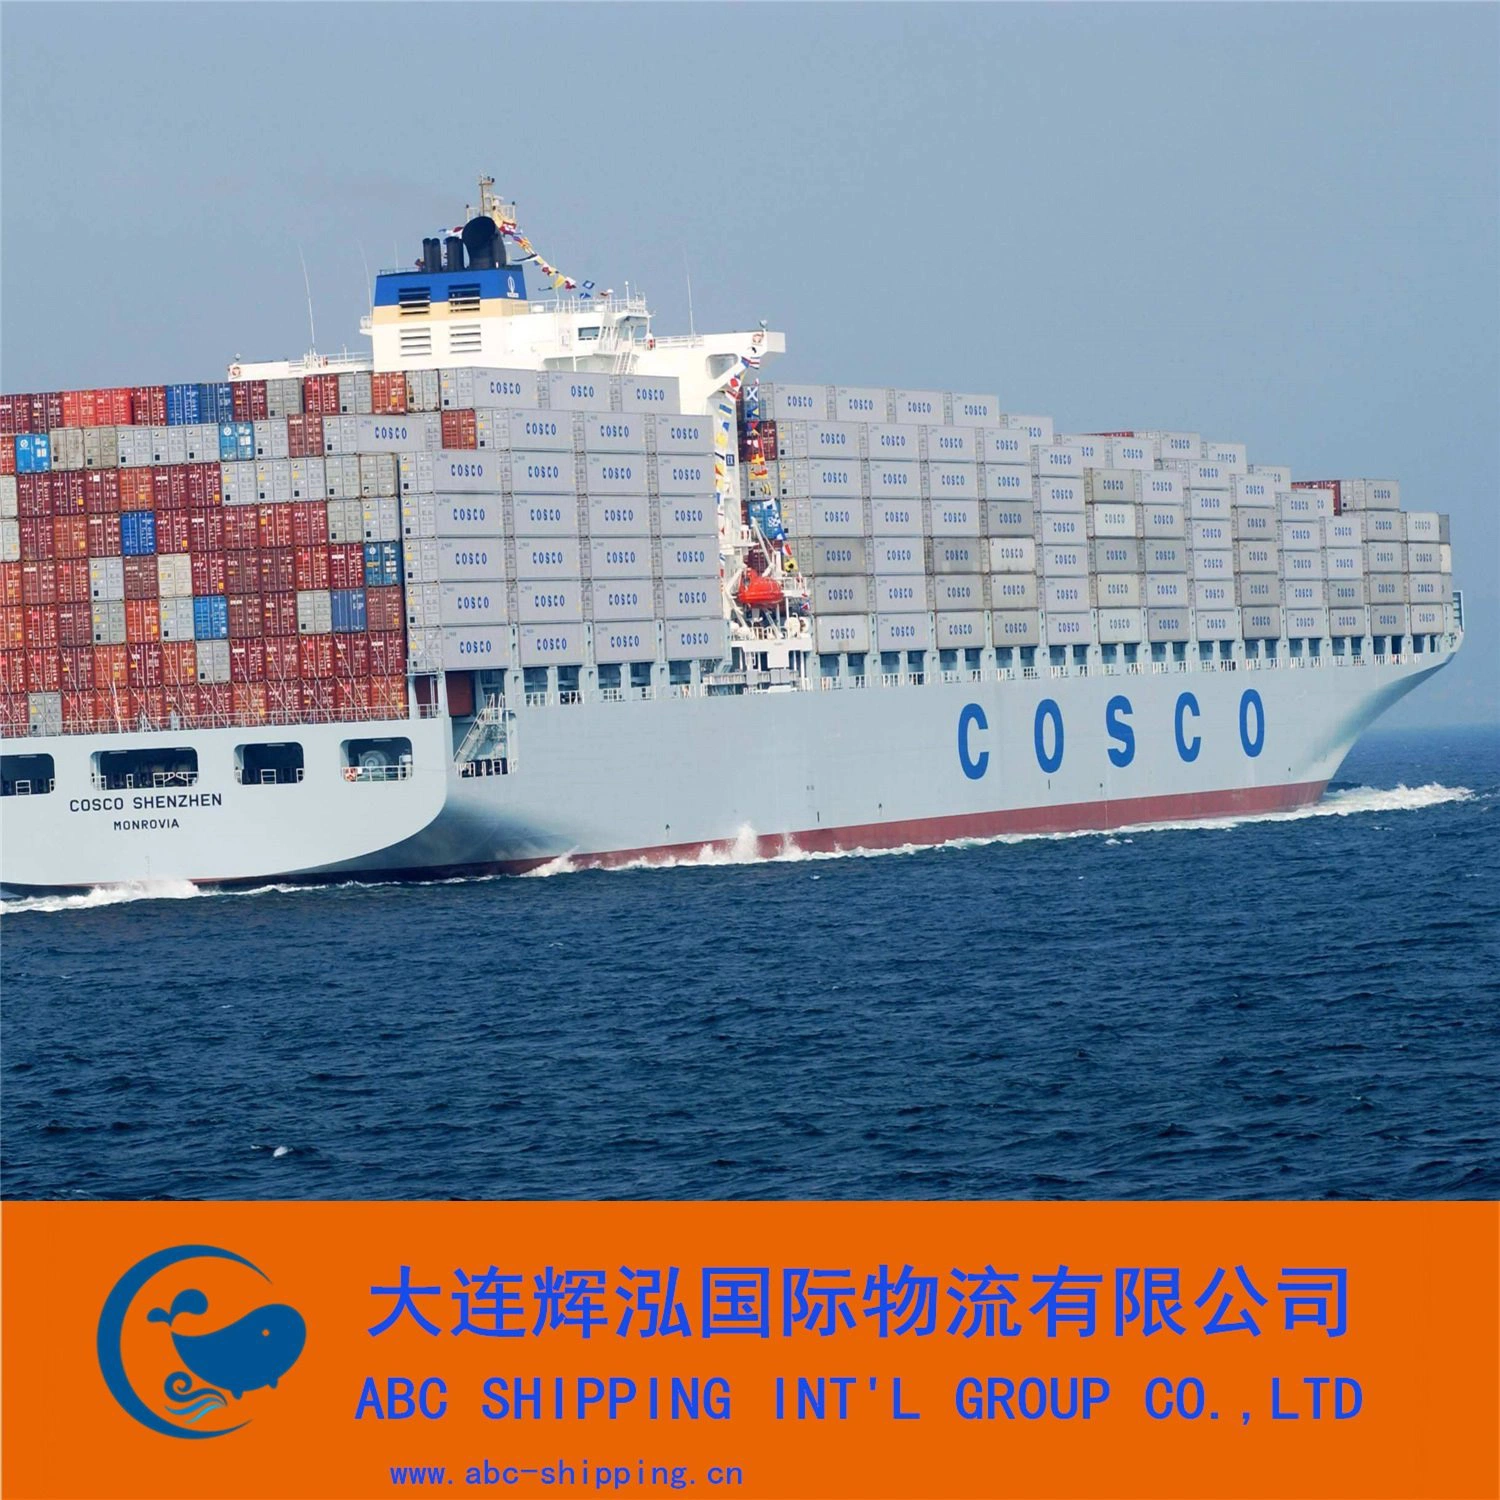 Serviços de Logística Internacional com foco em Mercadorias Marítimas